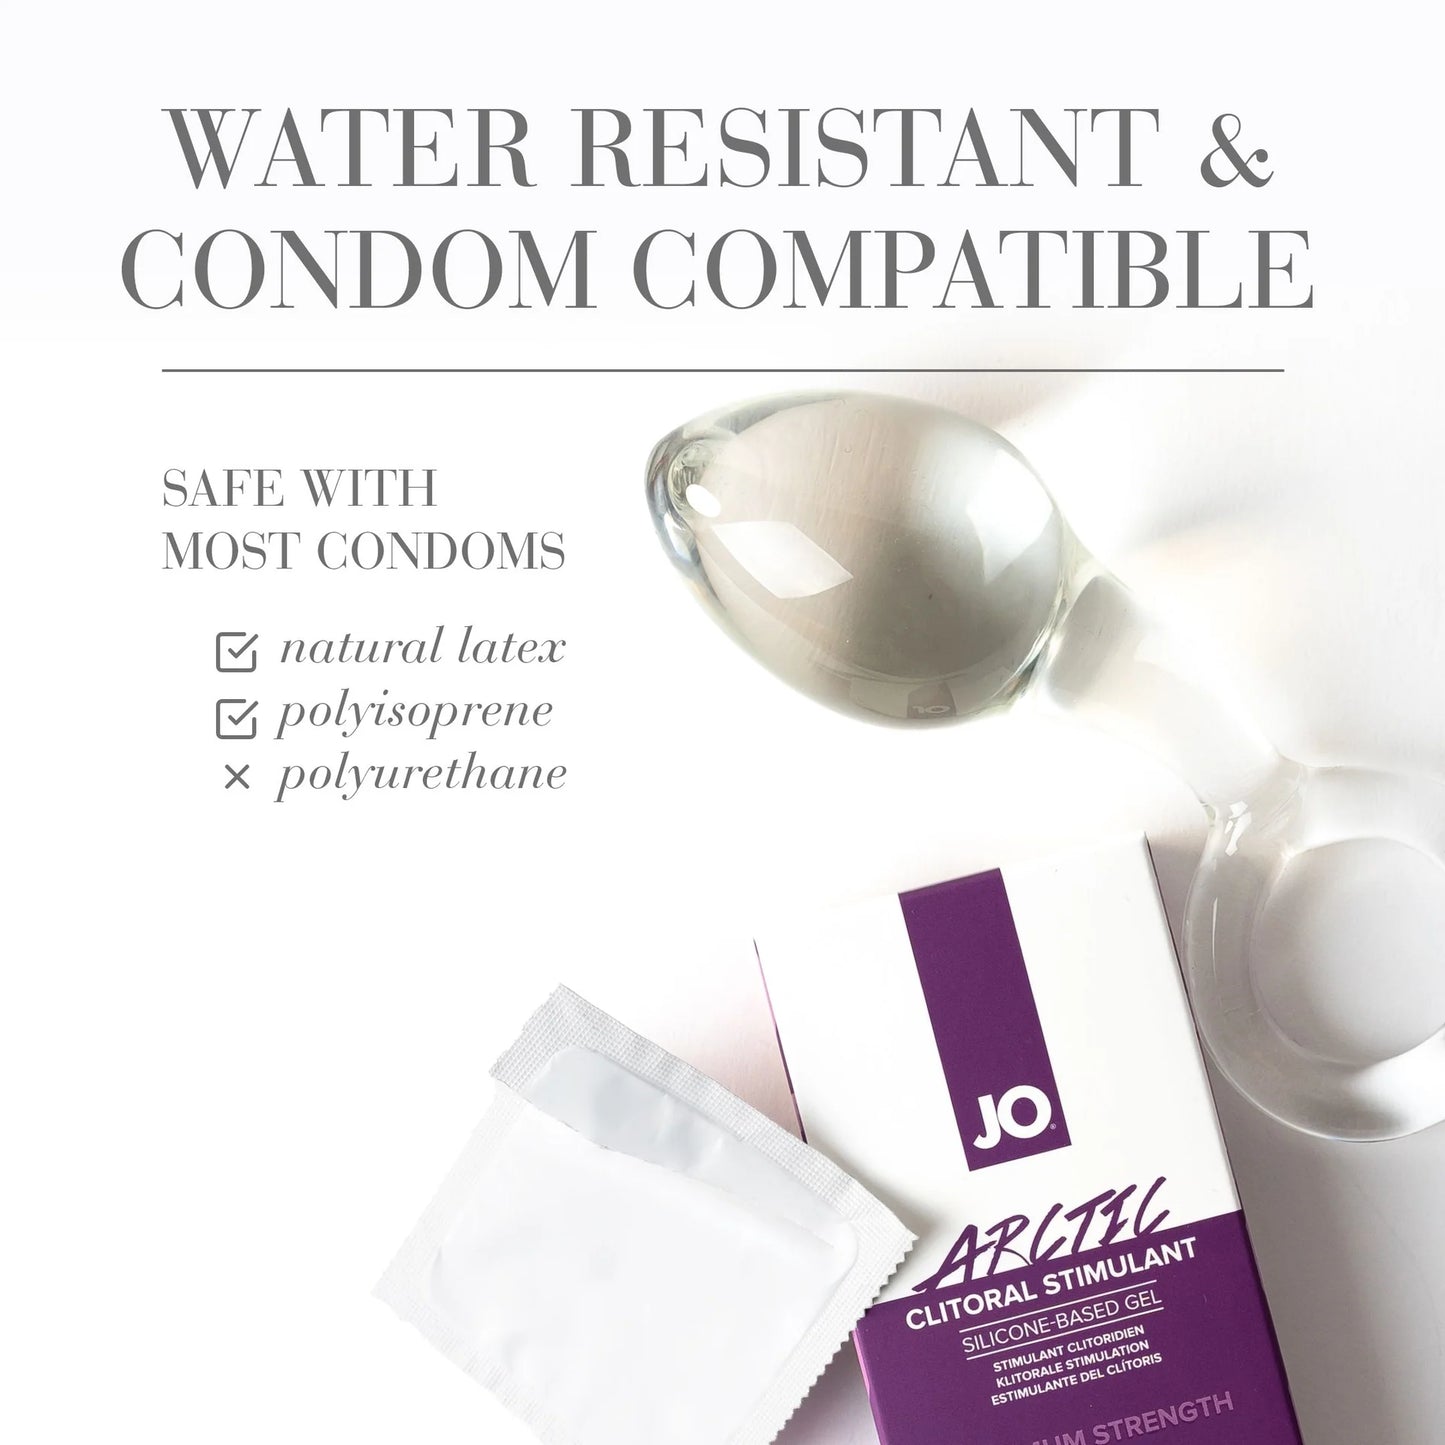 condom compatible clit stim